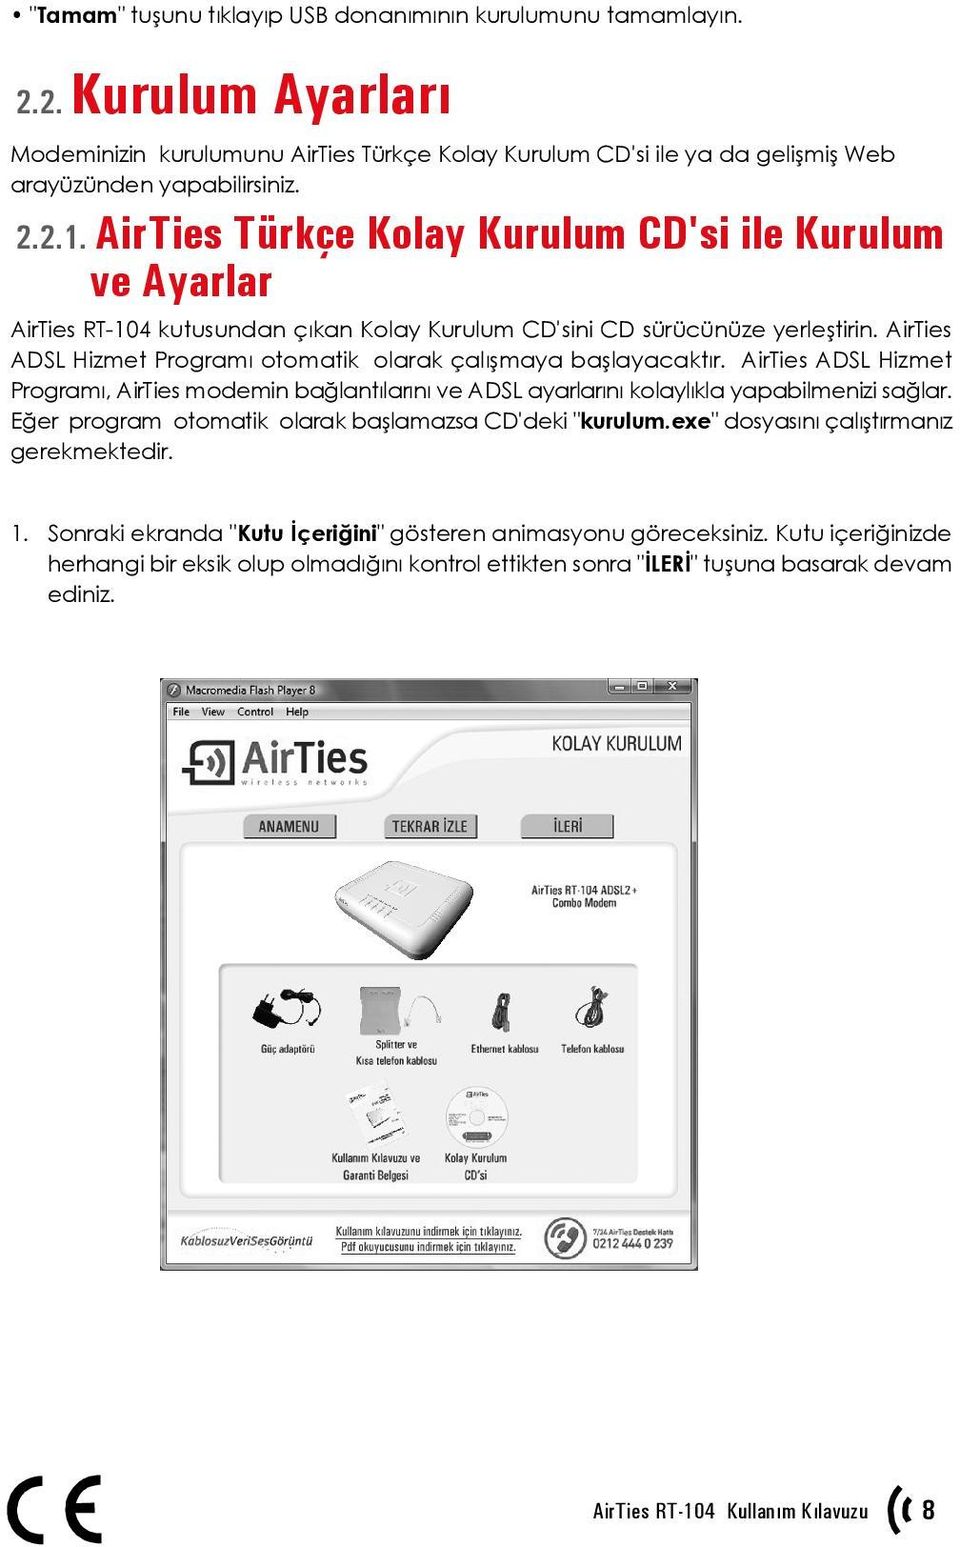 AirTies ADSL Hizmet Programı otomatik olarak çalışmaya başlayacaktır. AirTies ADSL Hizmet Programı, AirTies modemin bağlantılarını ve ADSL ayarlarını kolaylıkla yapabilmenizi sağlar.